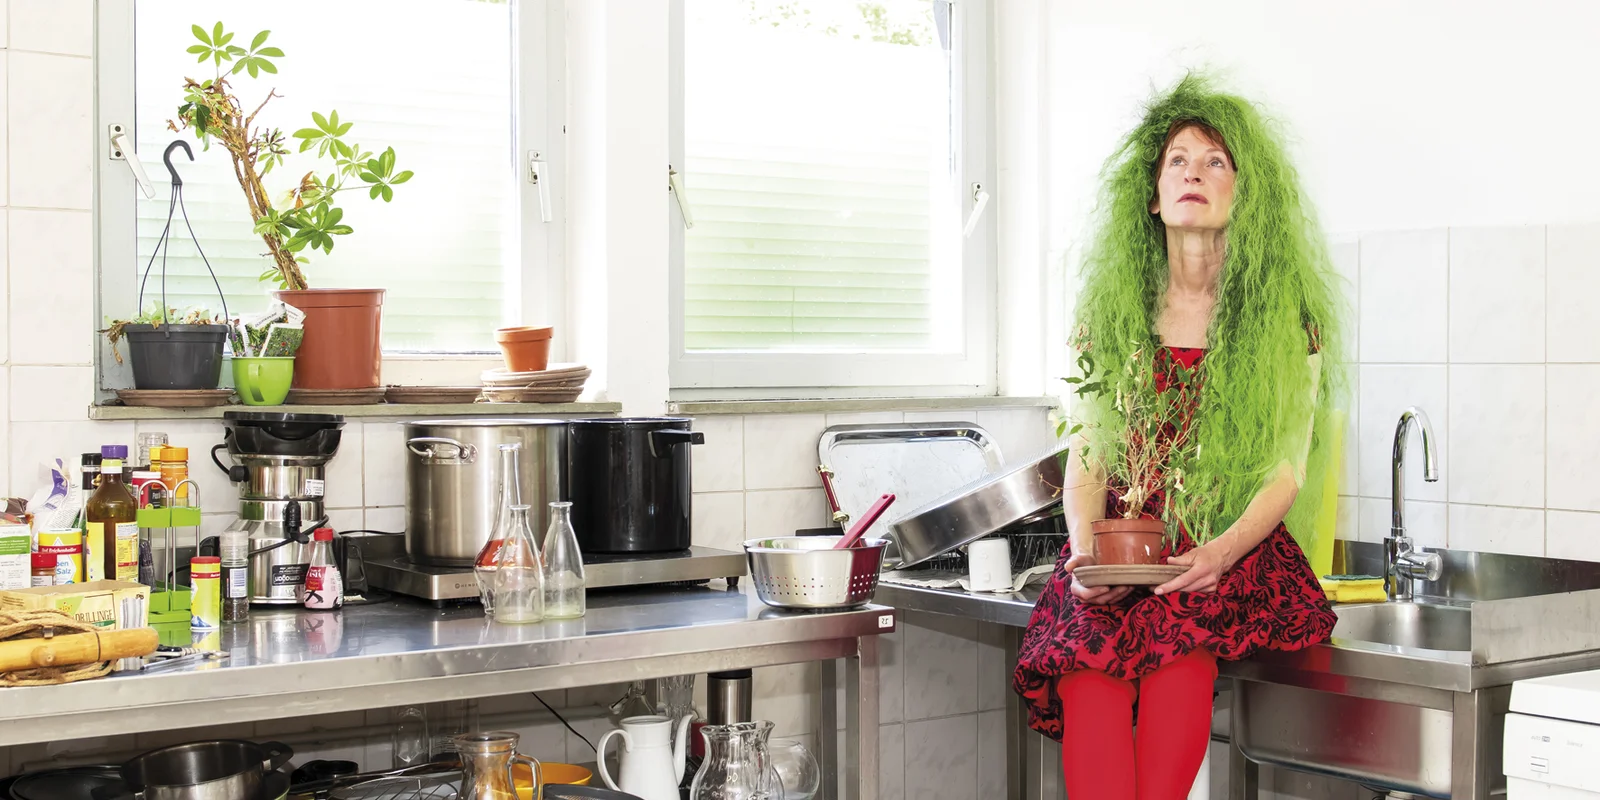 Franziska Aeschlimann sitzt auf einer Edelstahlspüle in einer Küche neben einem vollgestellten Etagenwagen. In der Hand hält sie eine Zimmerpflanze auf dem Kopf hat sie eine Perücke mit langen wilden grünen Haaren.